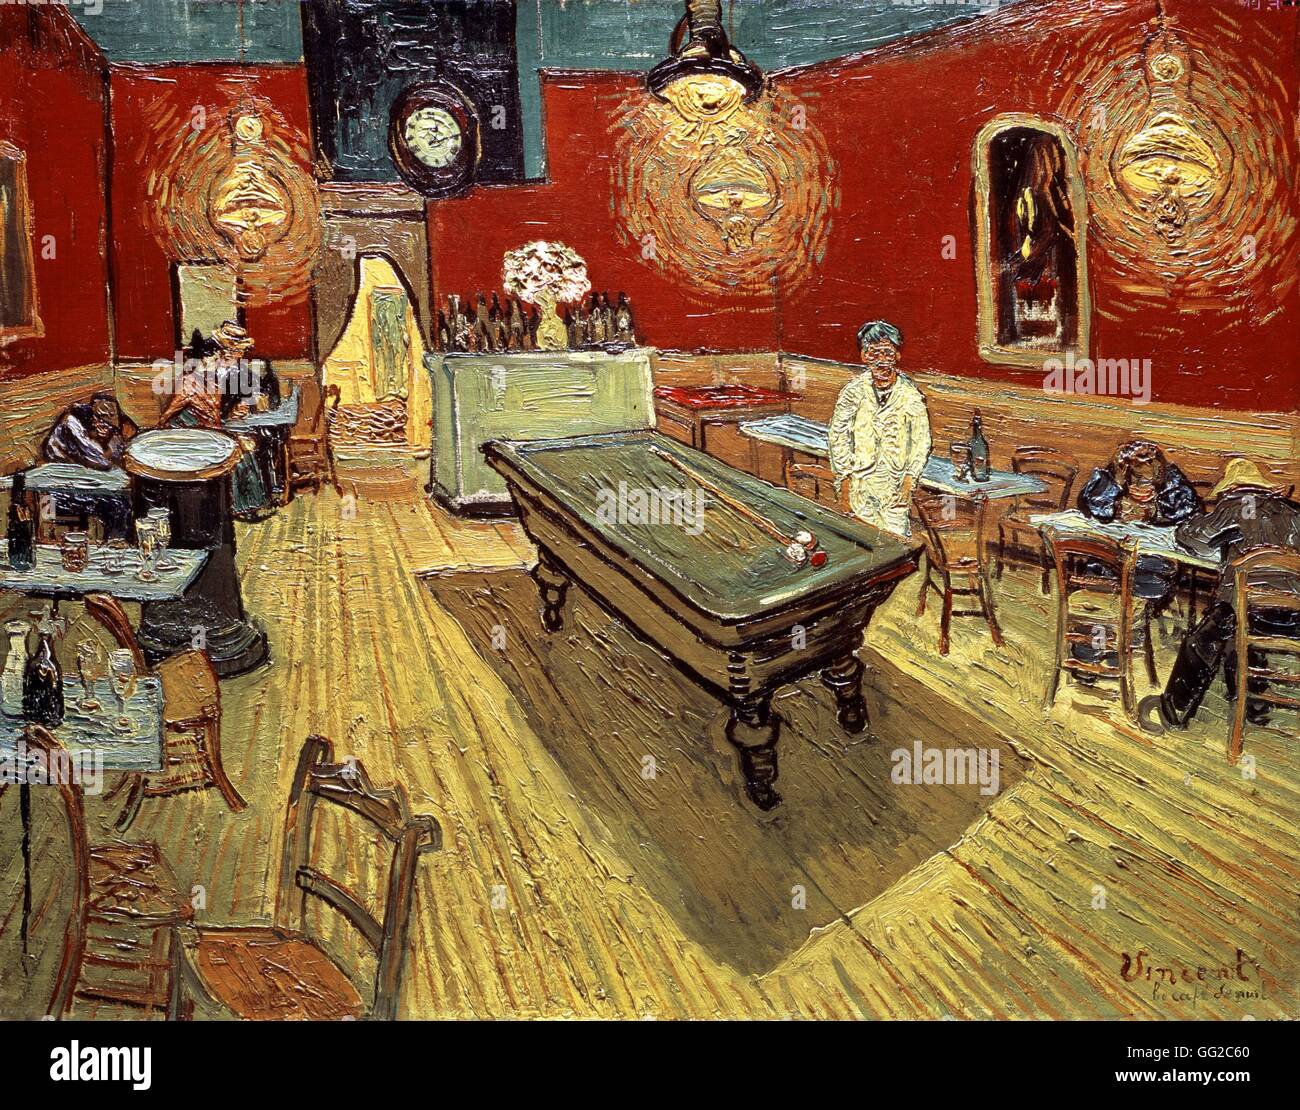 Vincent Van Gogh (1853-1890) La Nuit de l'école Néerlandaise Café de la place Lamartine à Arles Septembre 1888 Huile sur toile (70 x 89 cm), New Haven, Yale University Art Gallery Banque D'Images